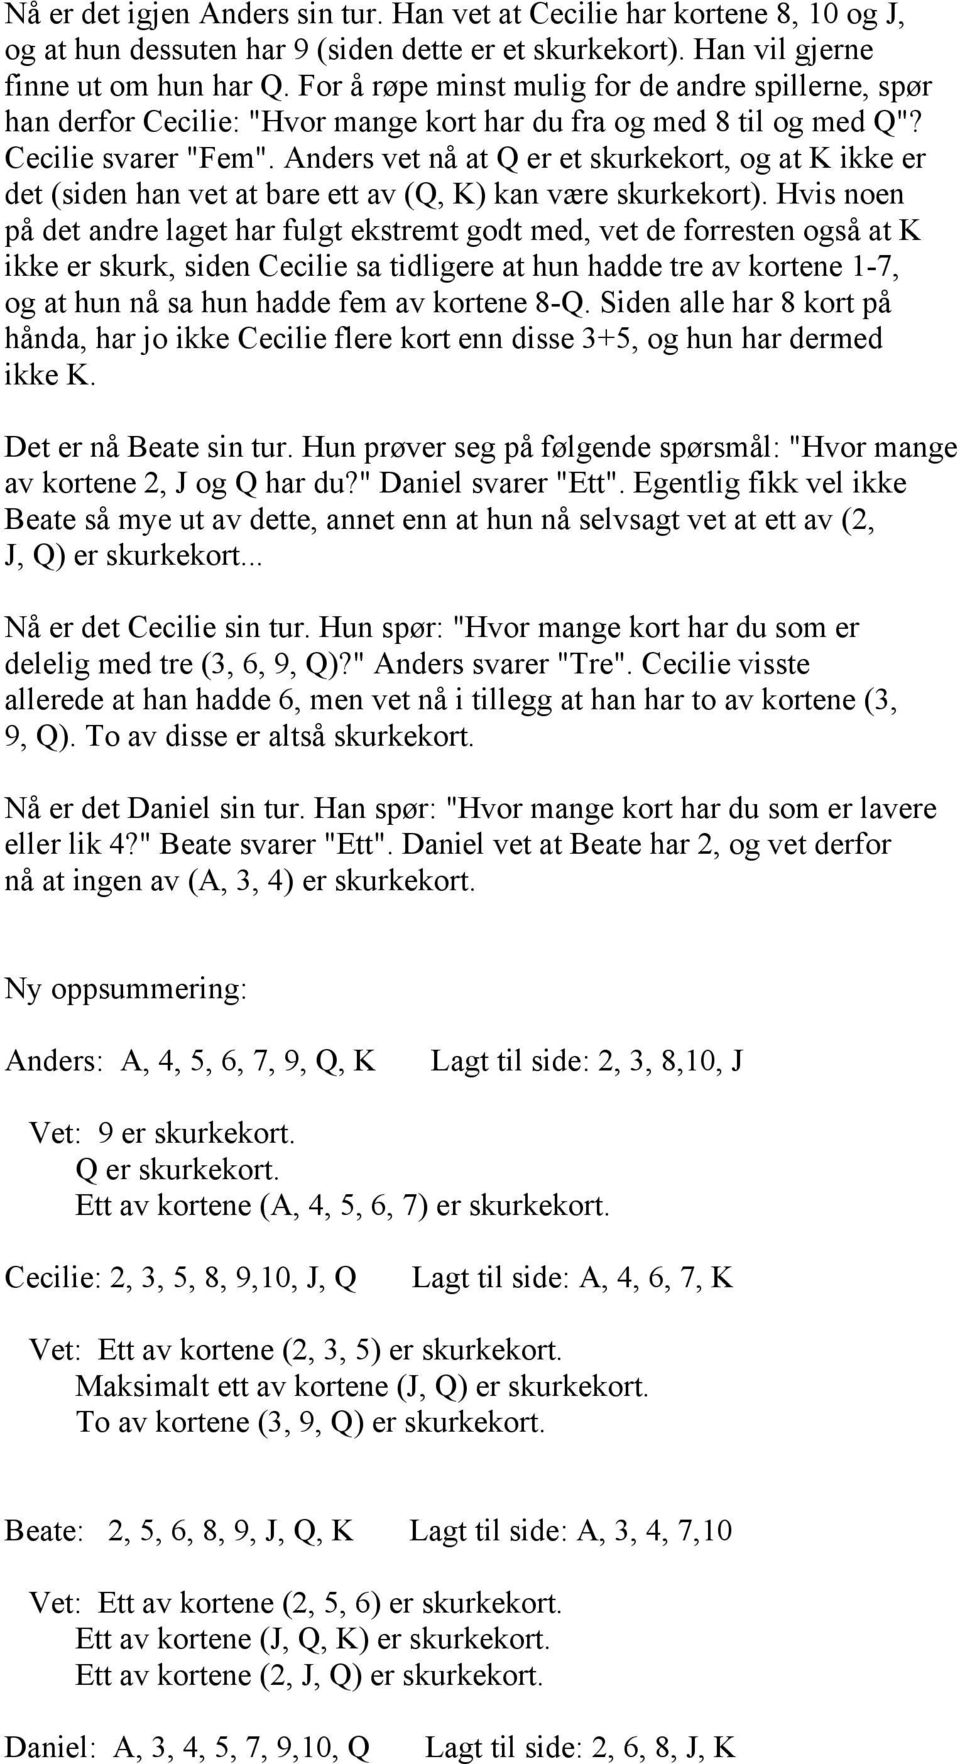 Anders vet nå at Q er et skurkekort, og at K ikke er det (siden han vet at bare ett av (Q, K) kan være skurkekort).